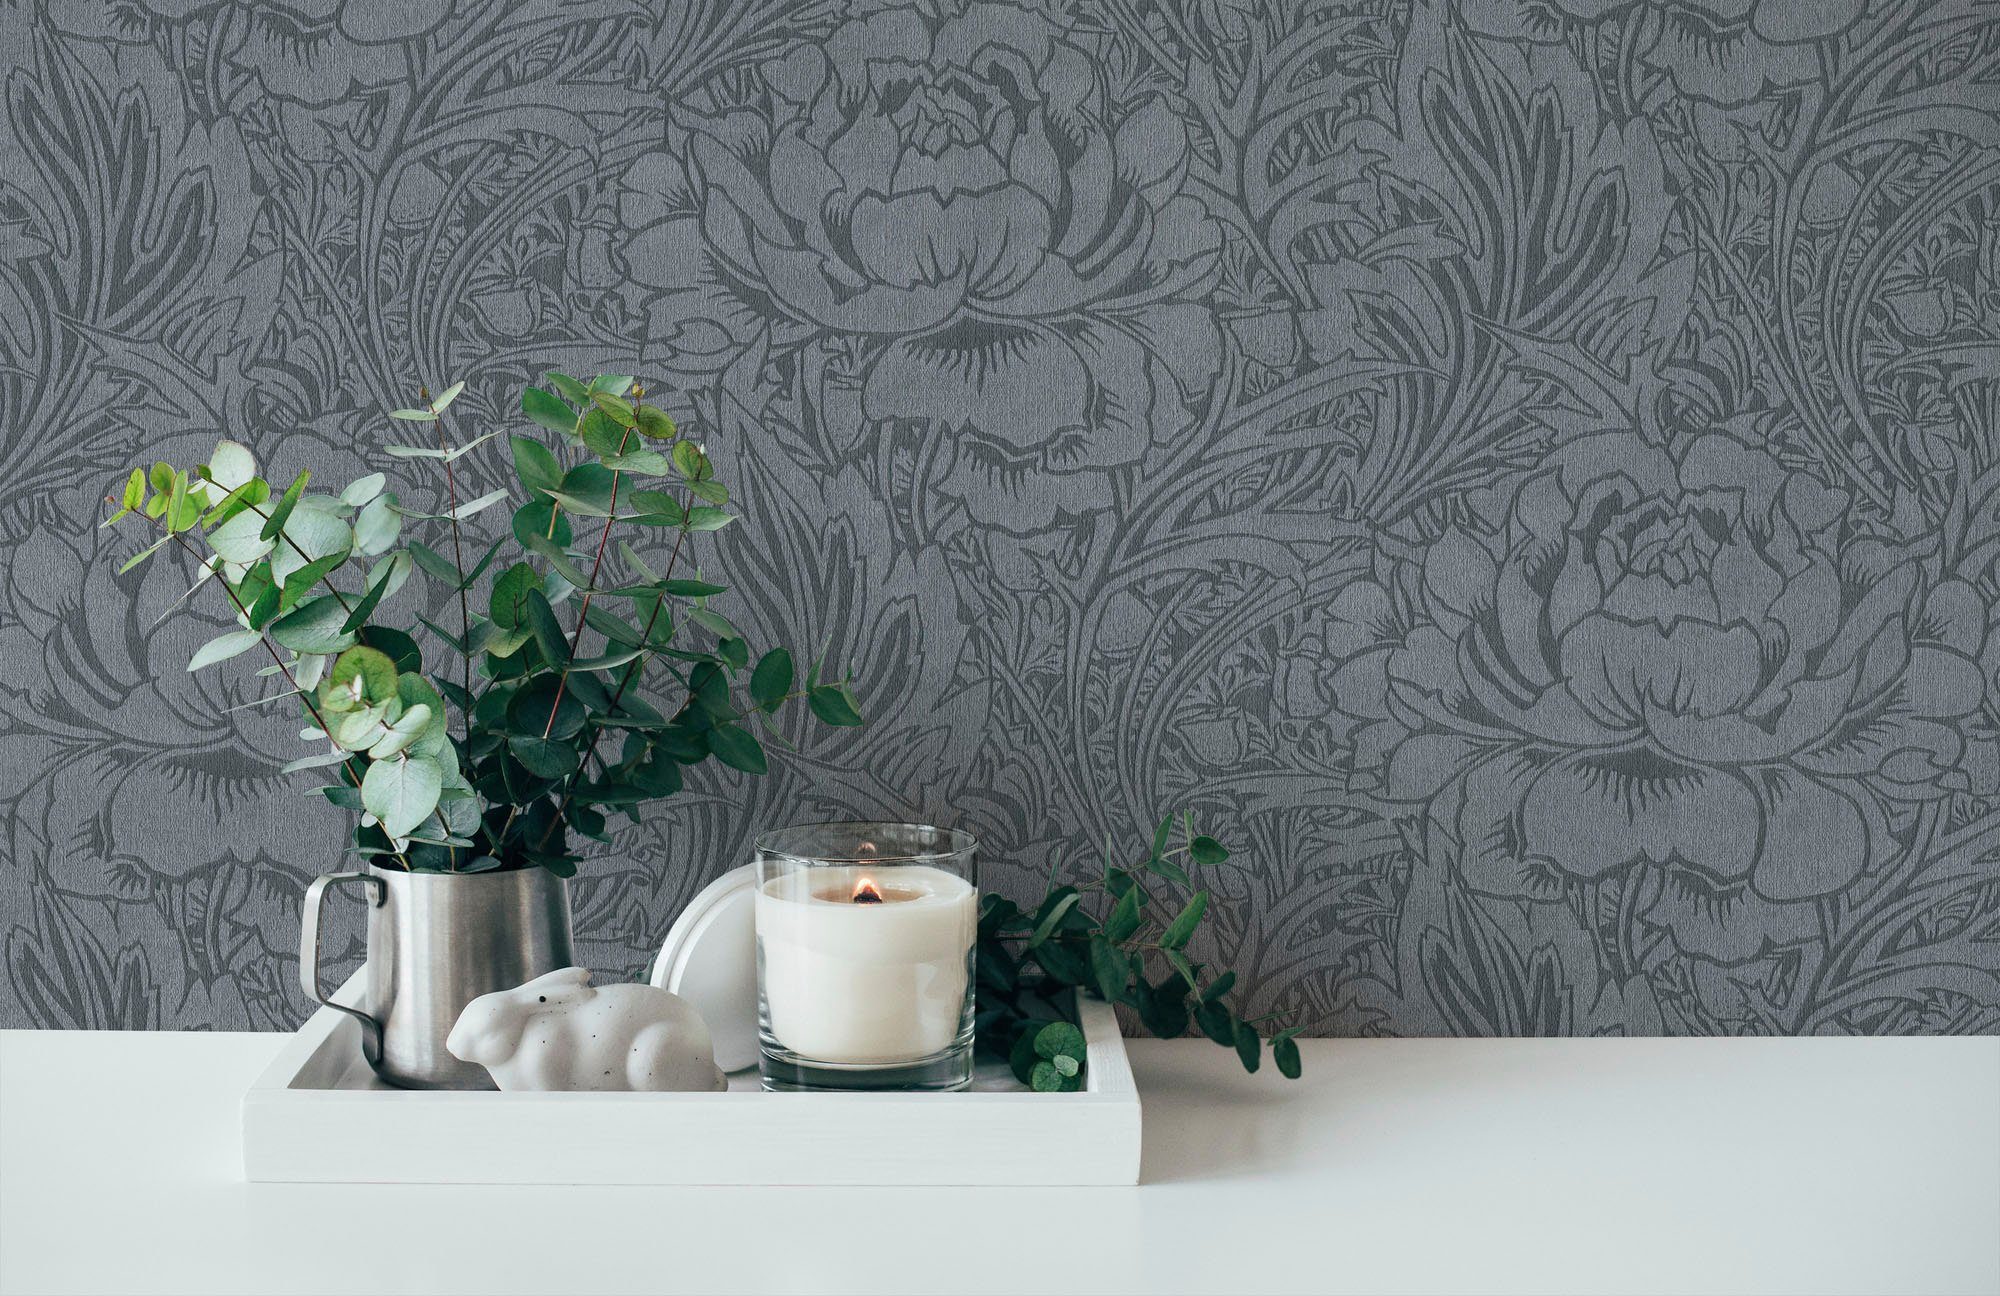 Florale living grau/grau Tapete floral, Blumen Hari, Mata strukturiert, Vliestapete geblümt, natürlich, walls